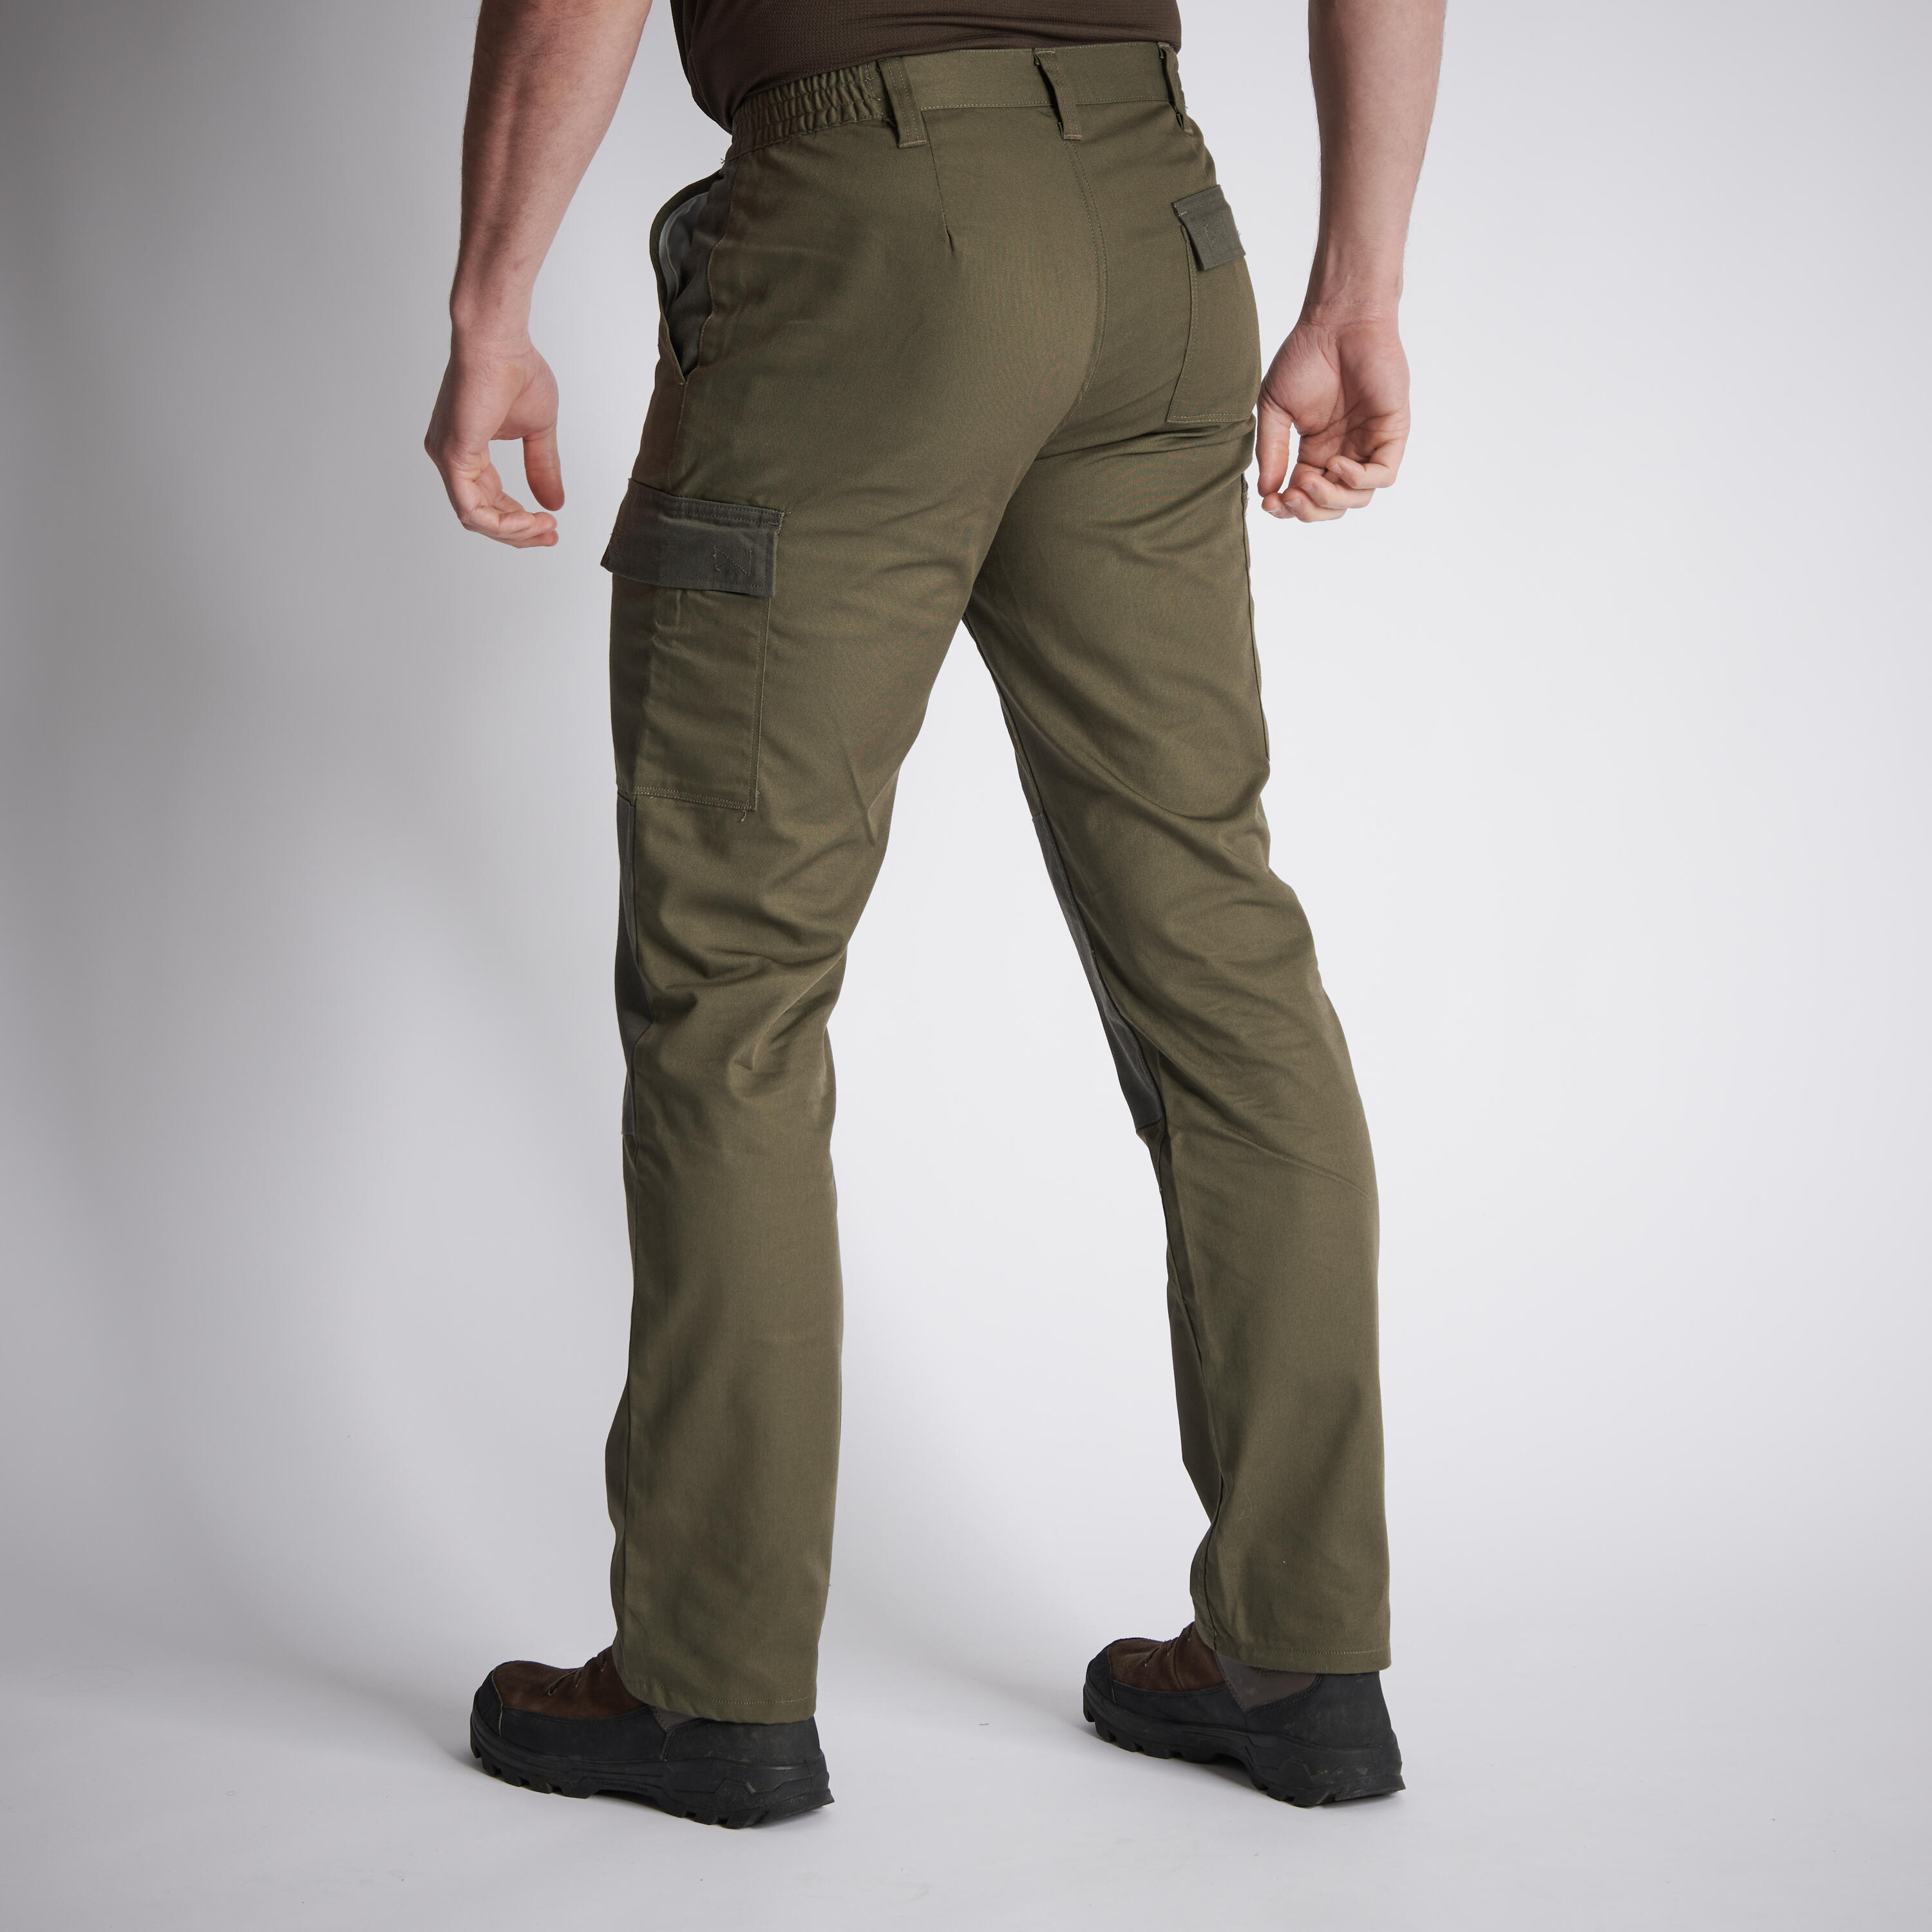 Pantalon cargo résistant - Steppe 300 bicolore - SOLOGNAC